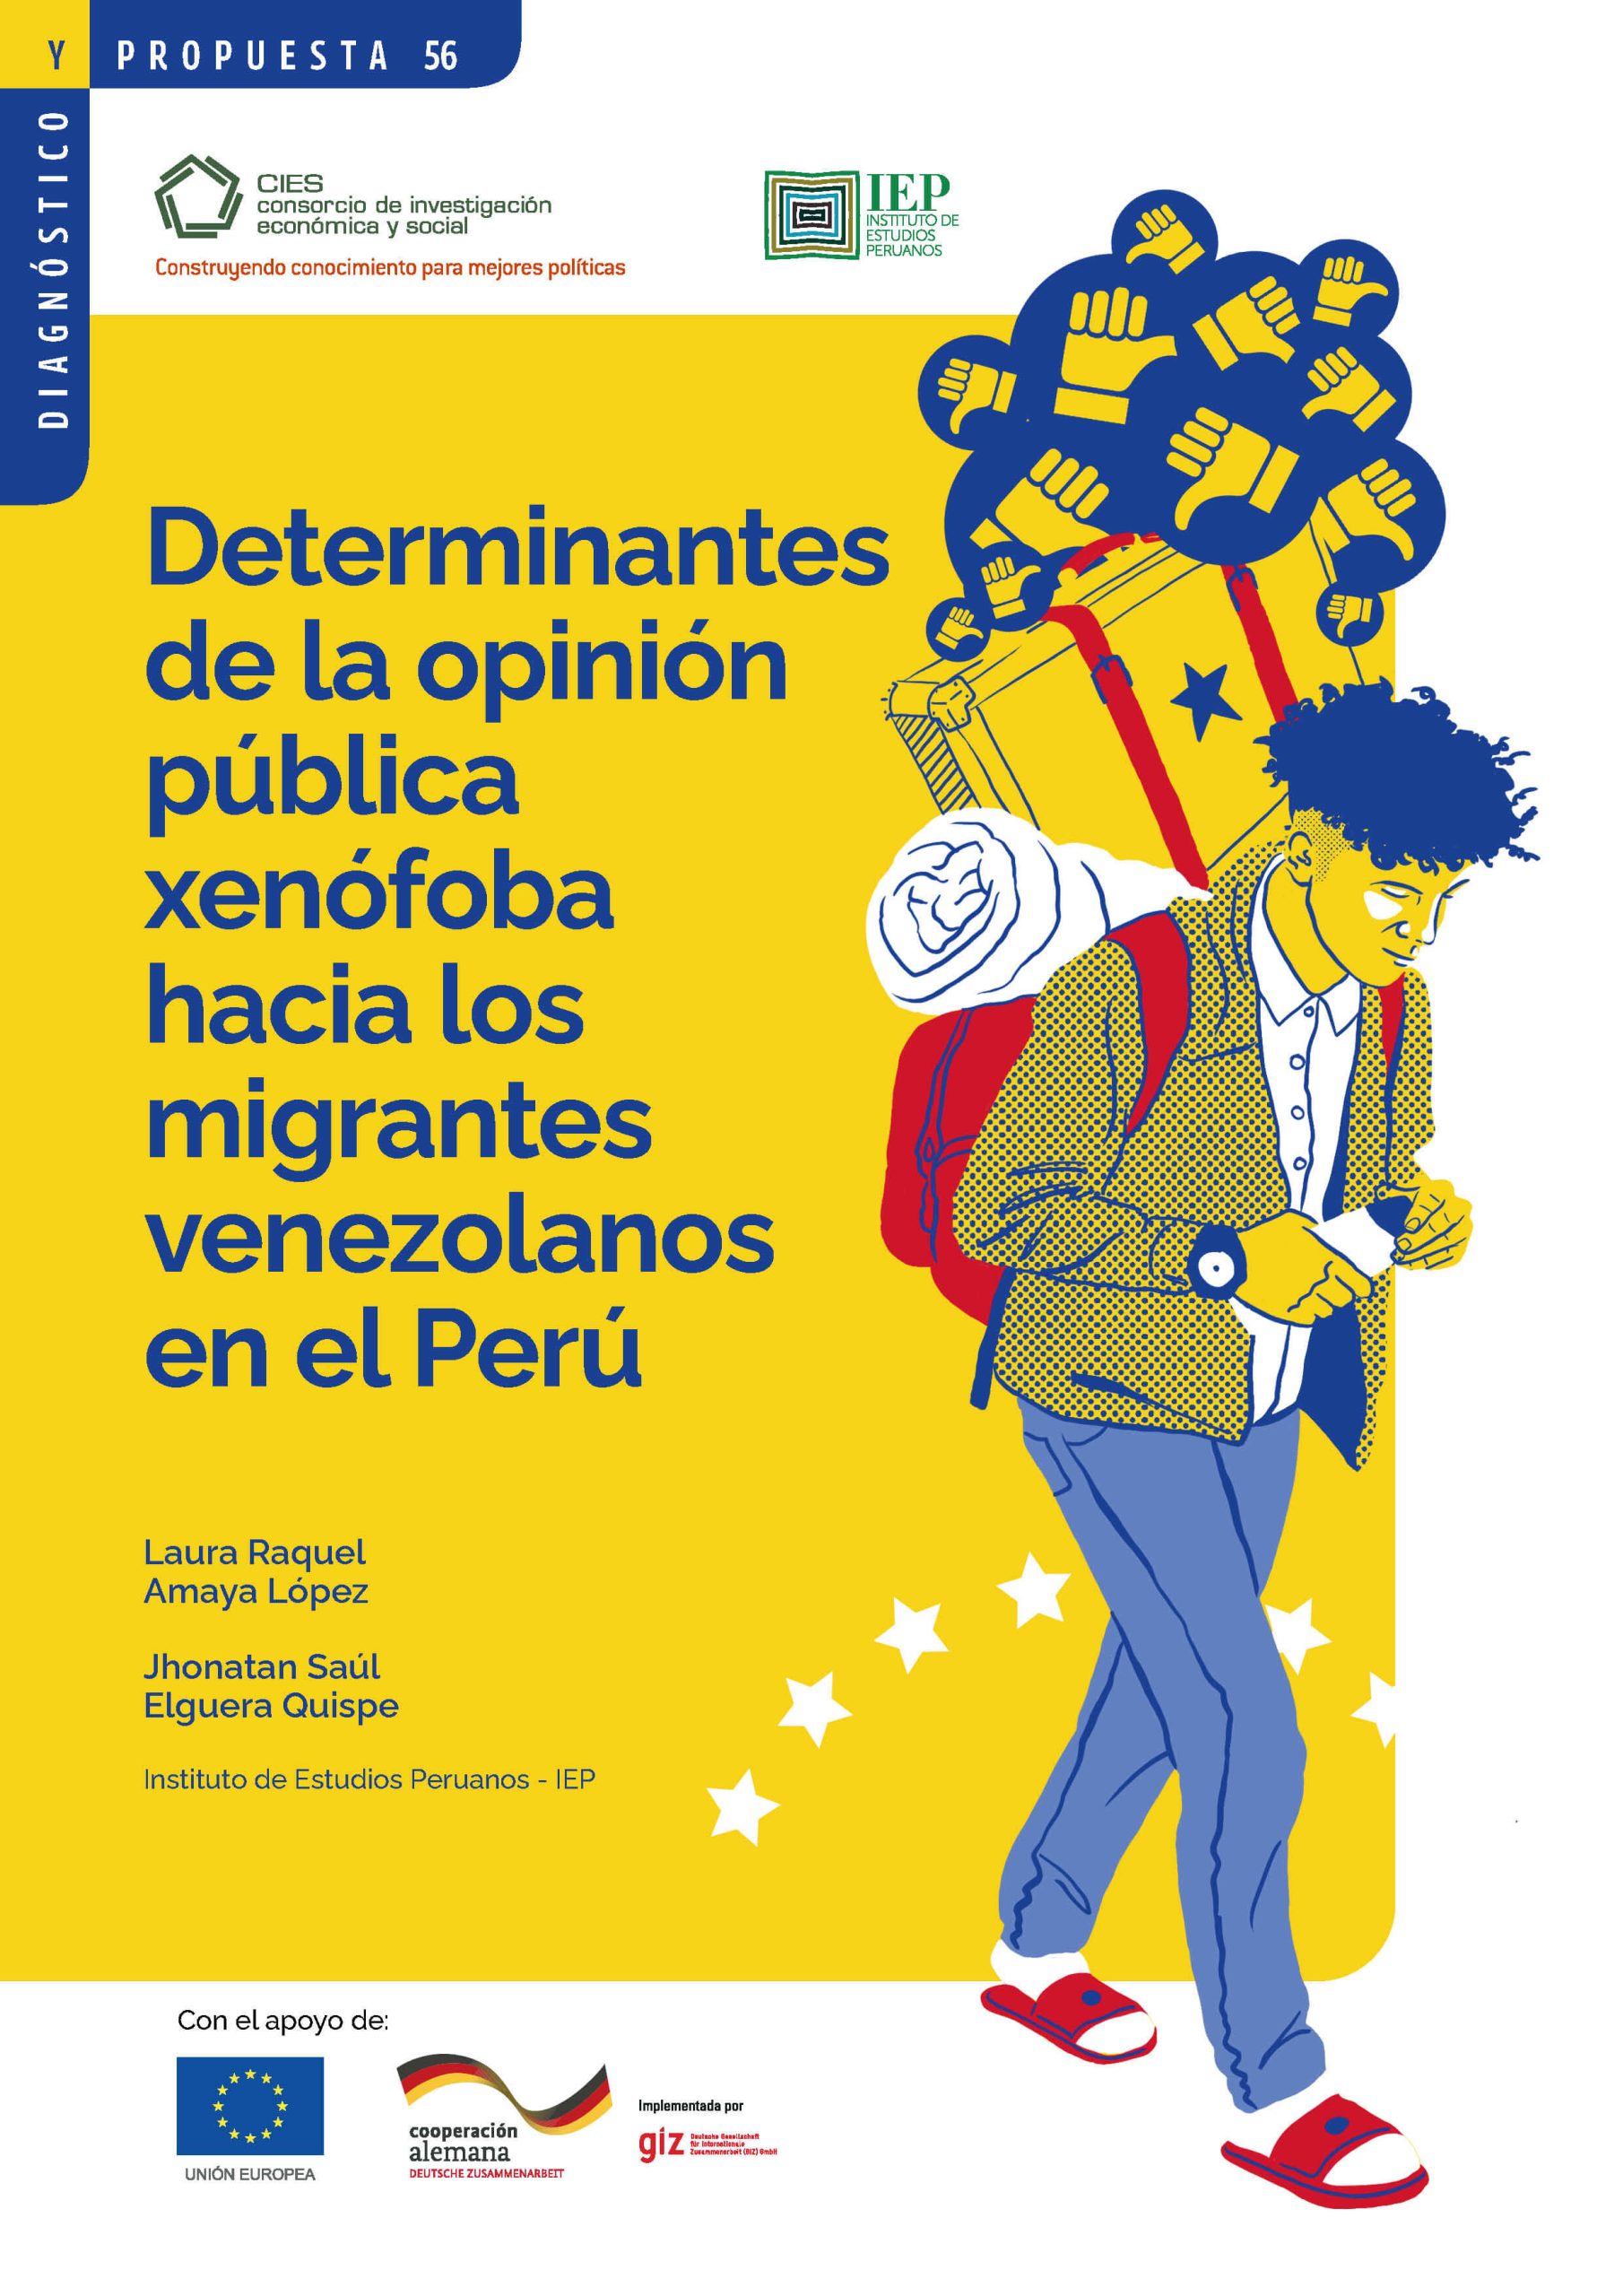 Determinantes de la opinión pública xenófoba en el Perú